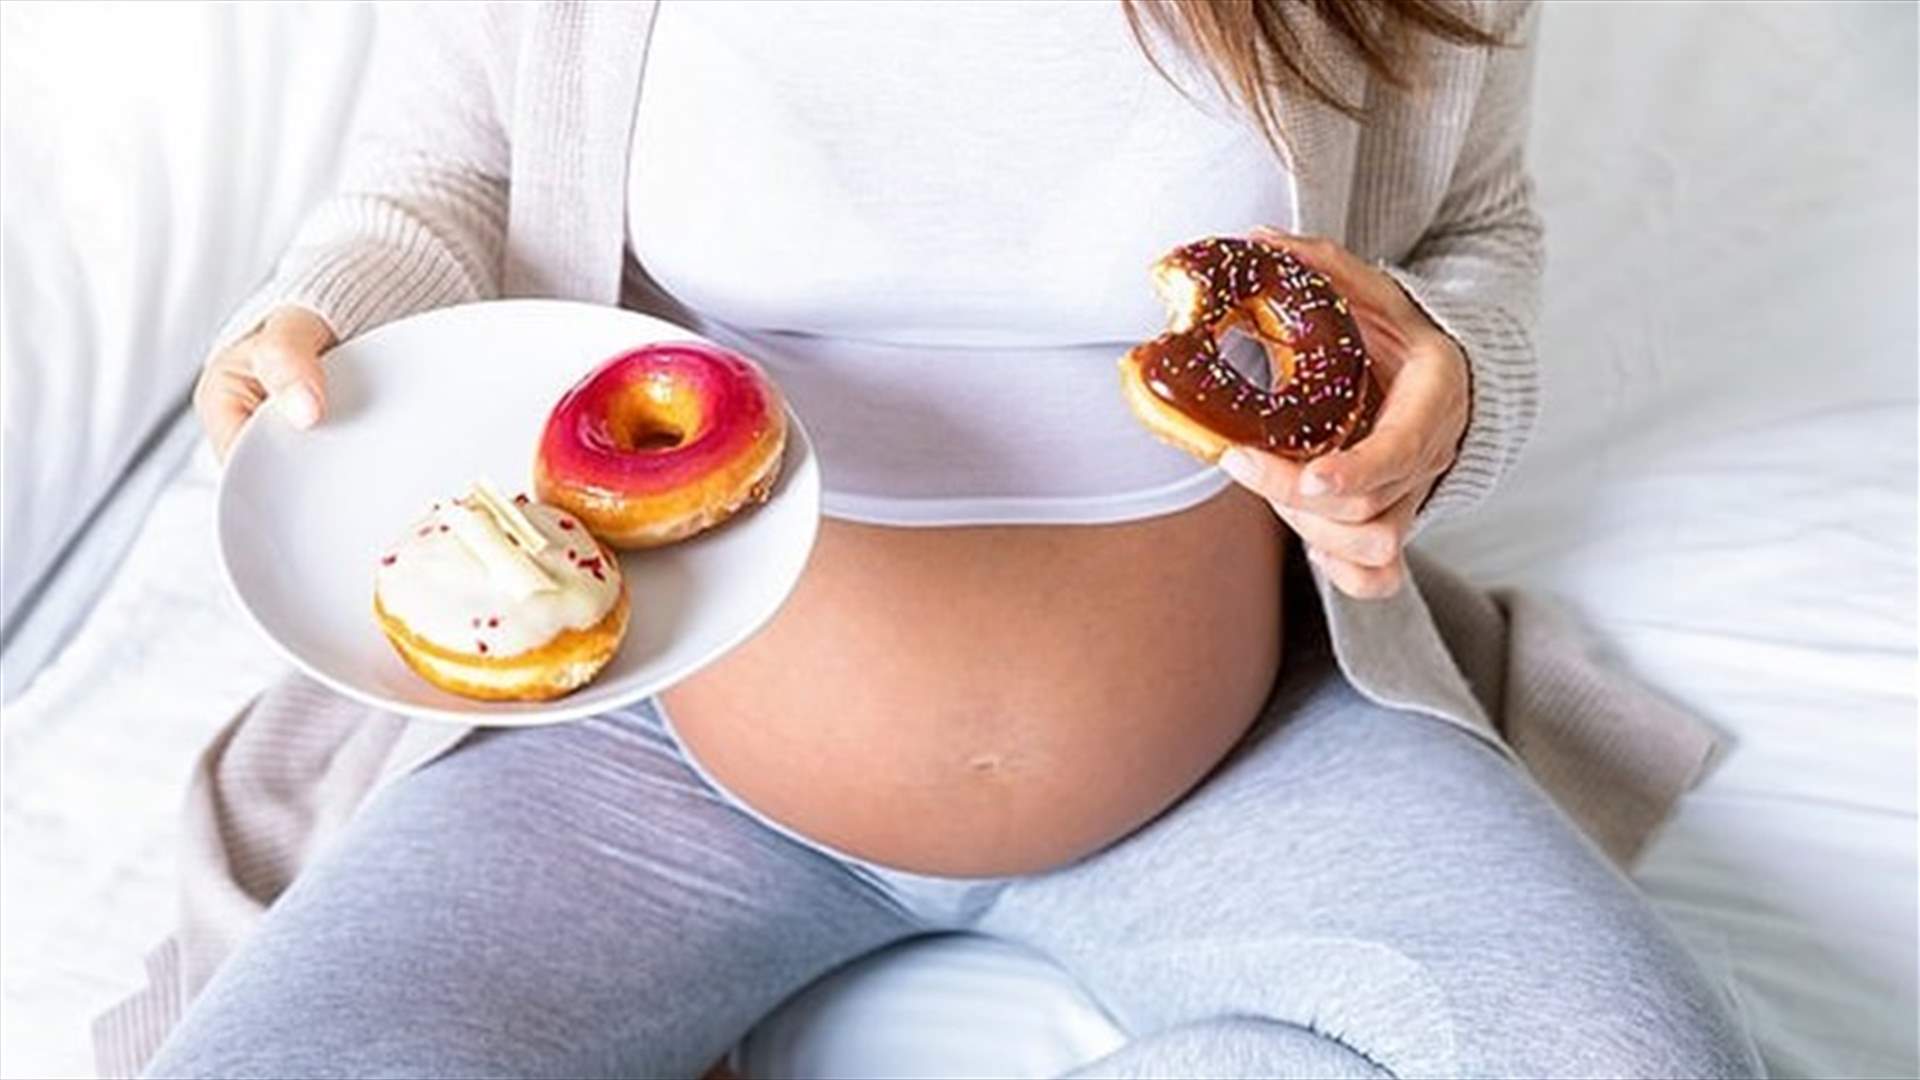 دراسة تكشف... هكذا يؤثر نظام المرأة الغذائي خلال الحمل على وزن الأطفال!